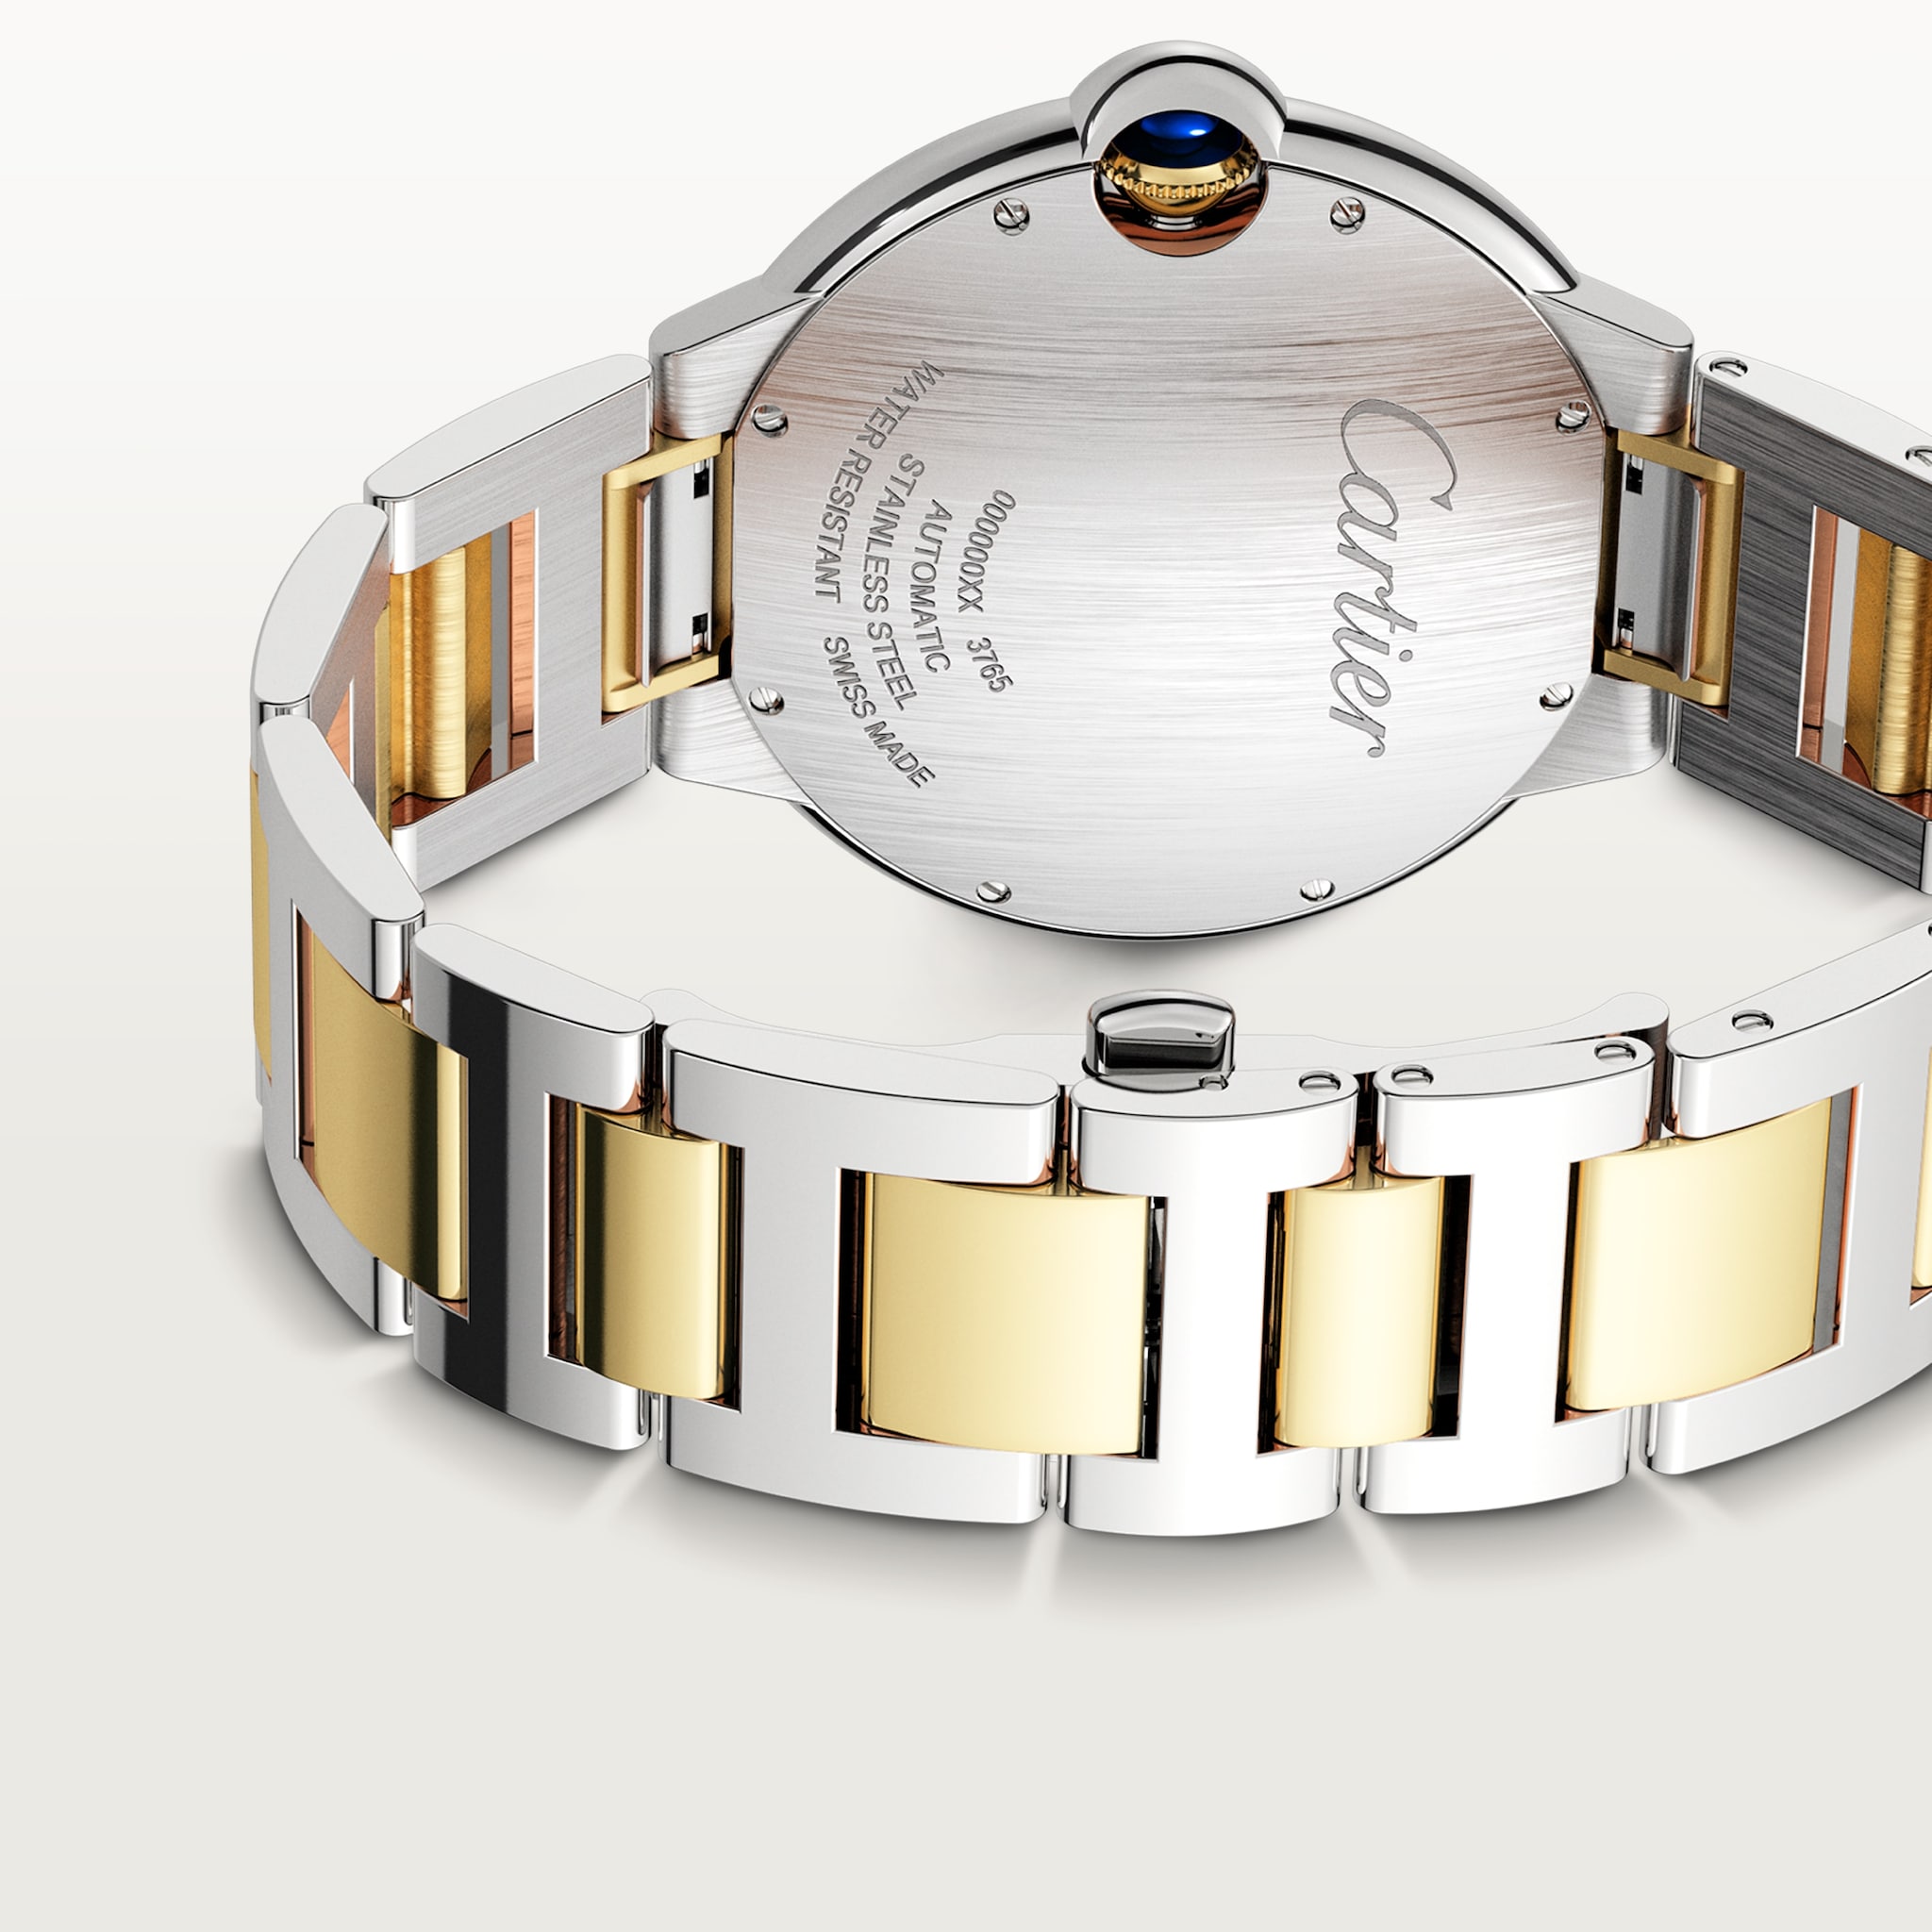 Ballon Bleu de Cartier watch42 mm, mechanical movement with automatic winding, yellow gold, steel